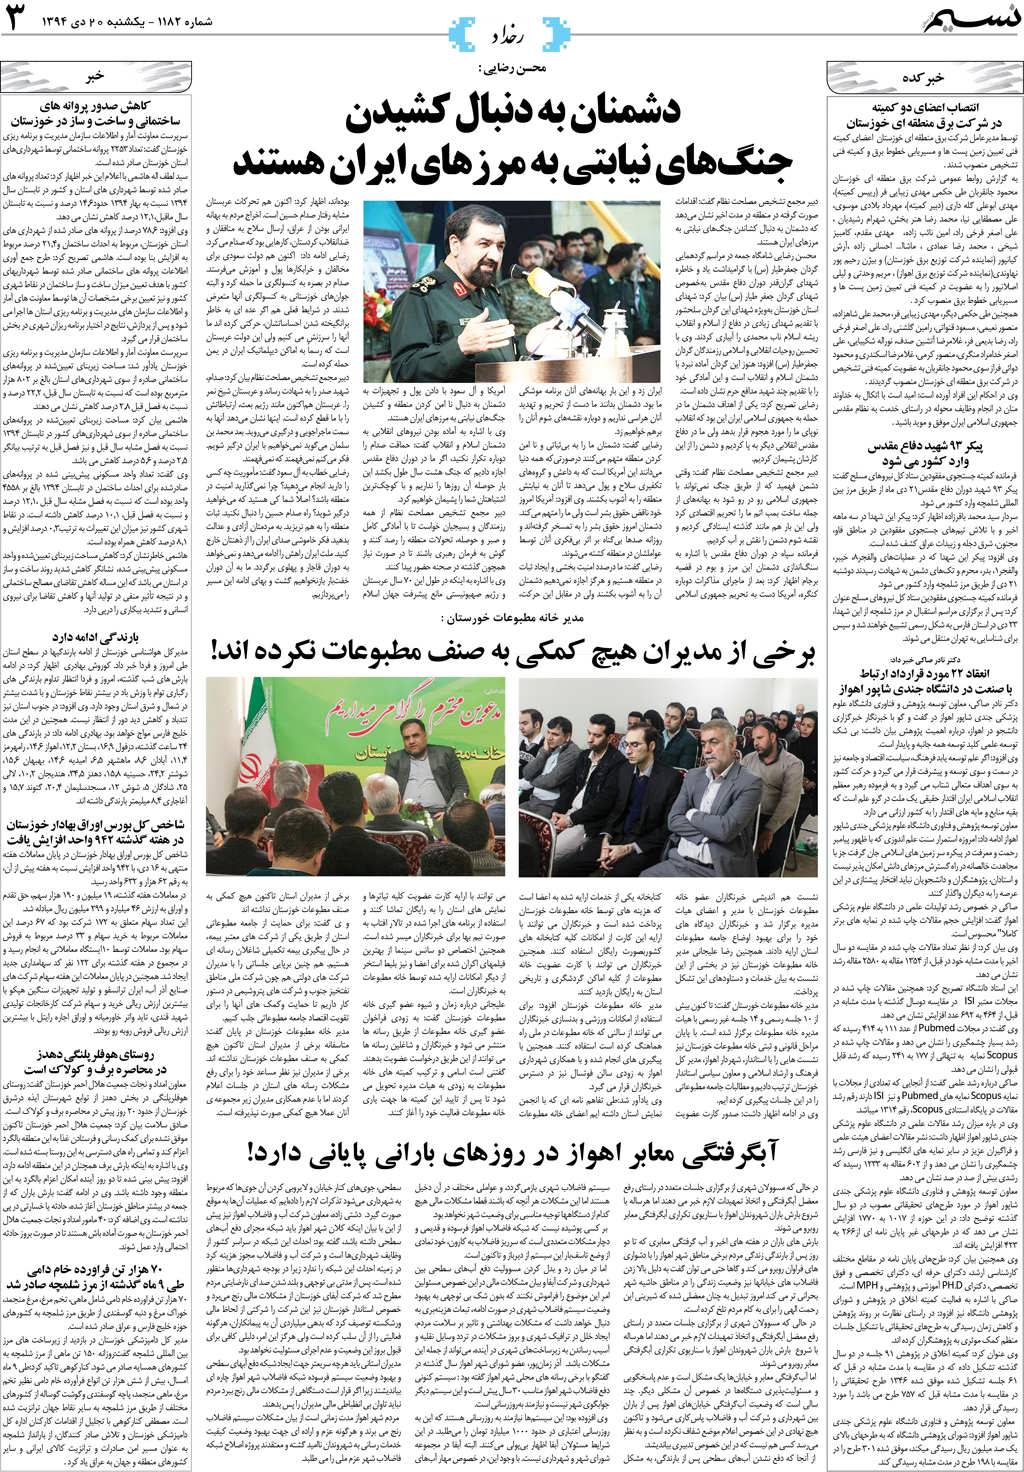 صفحه رخداد روزنامه نسیم شماره 1182